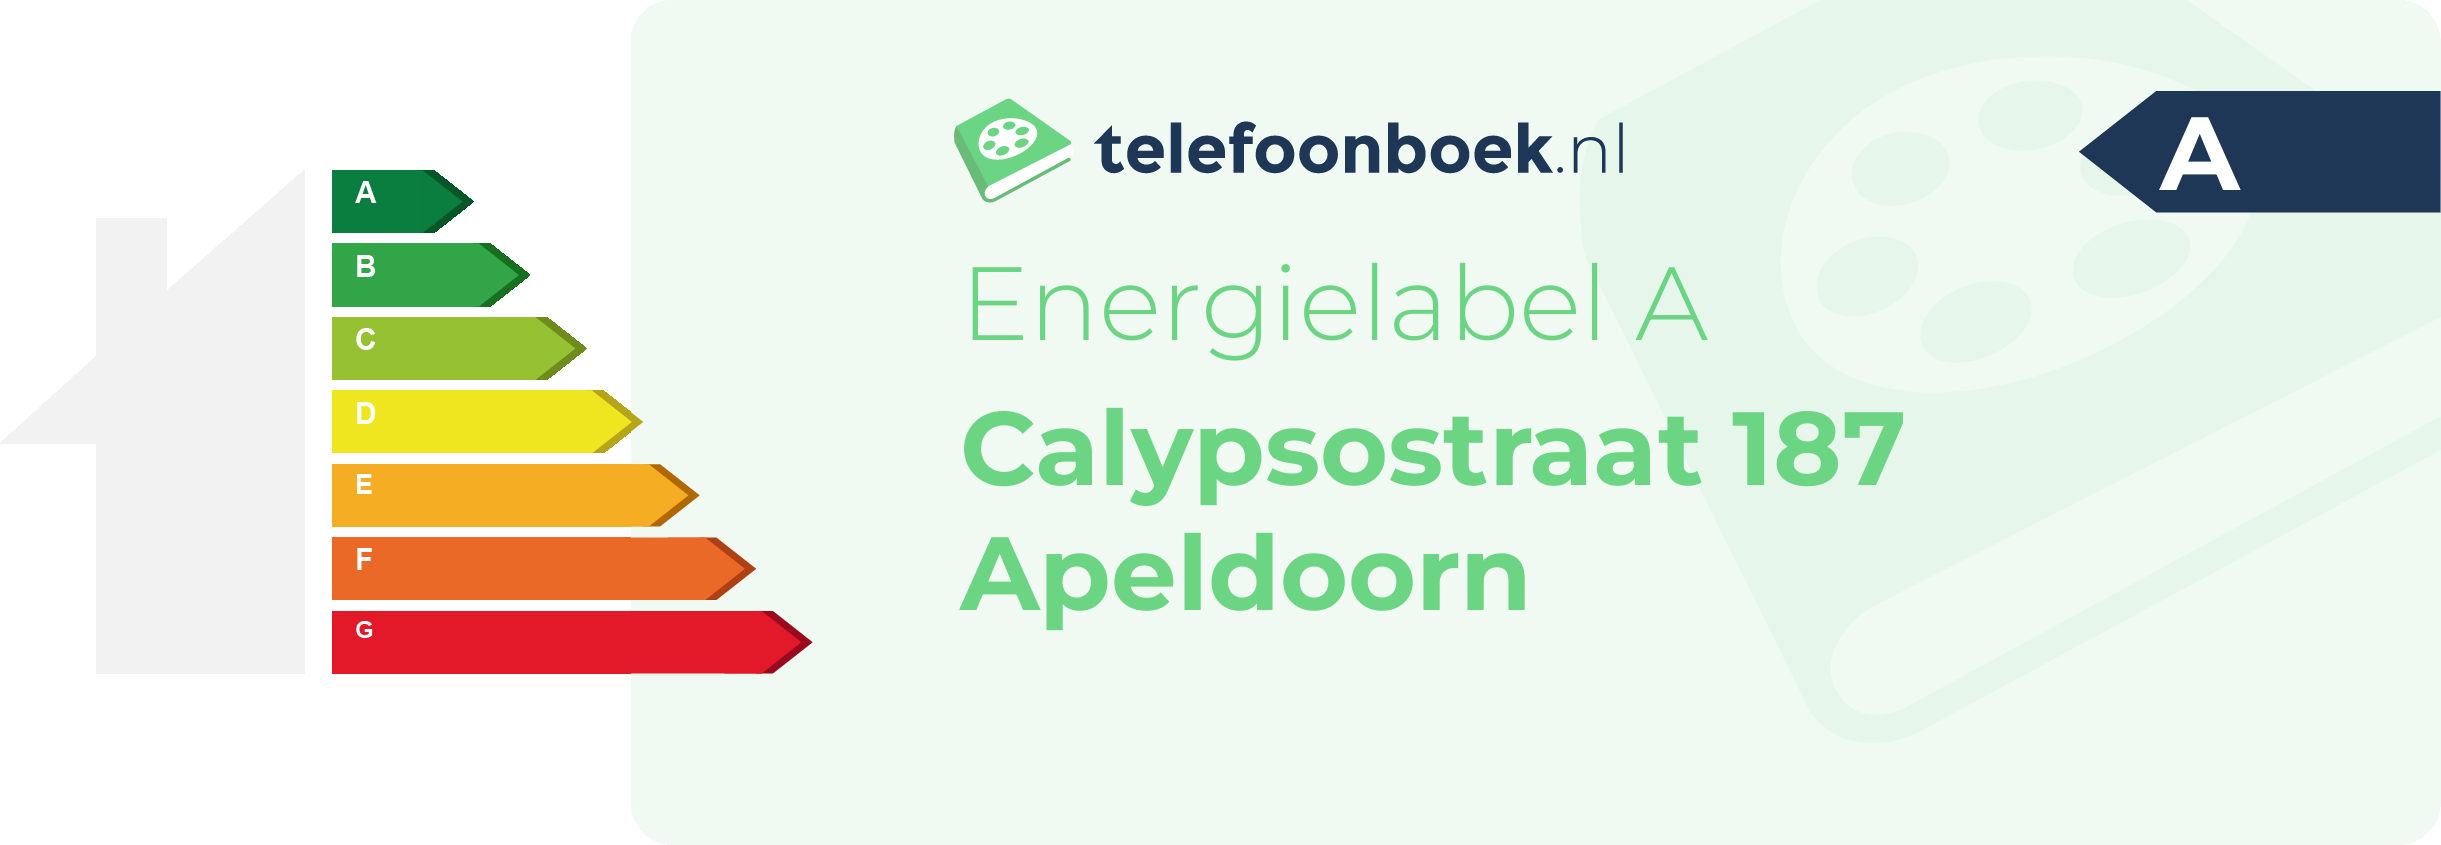 Energielabel Calypsostraat 187 Apeldoorn